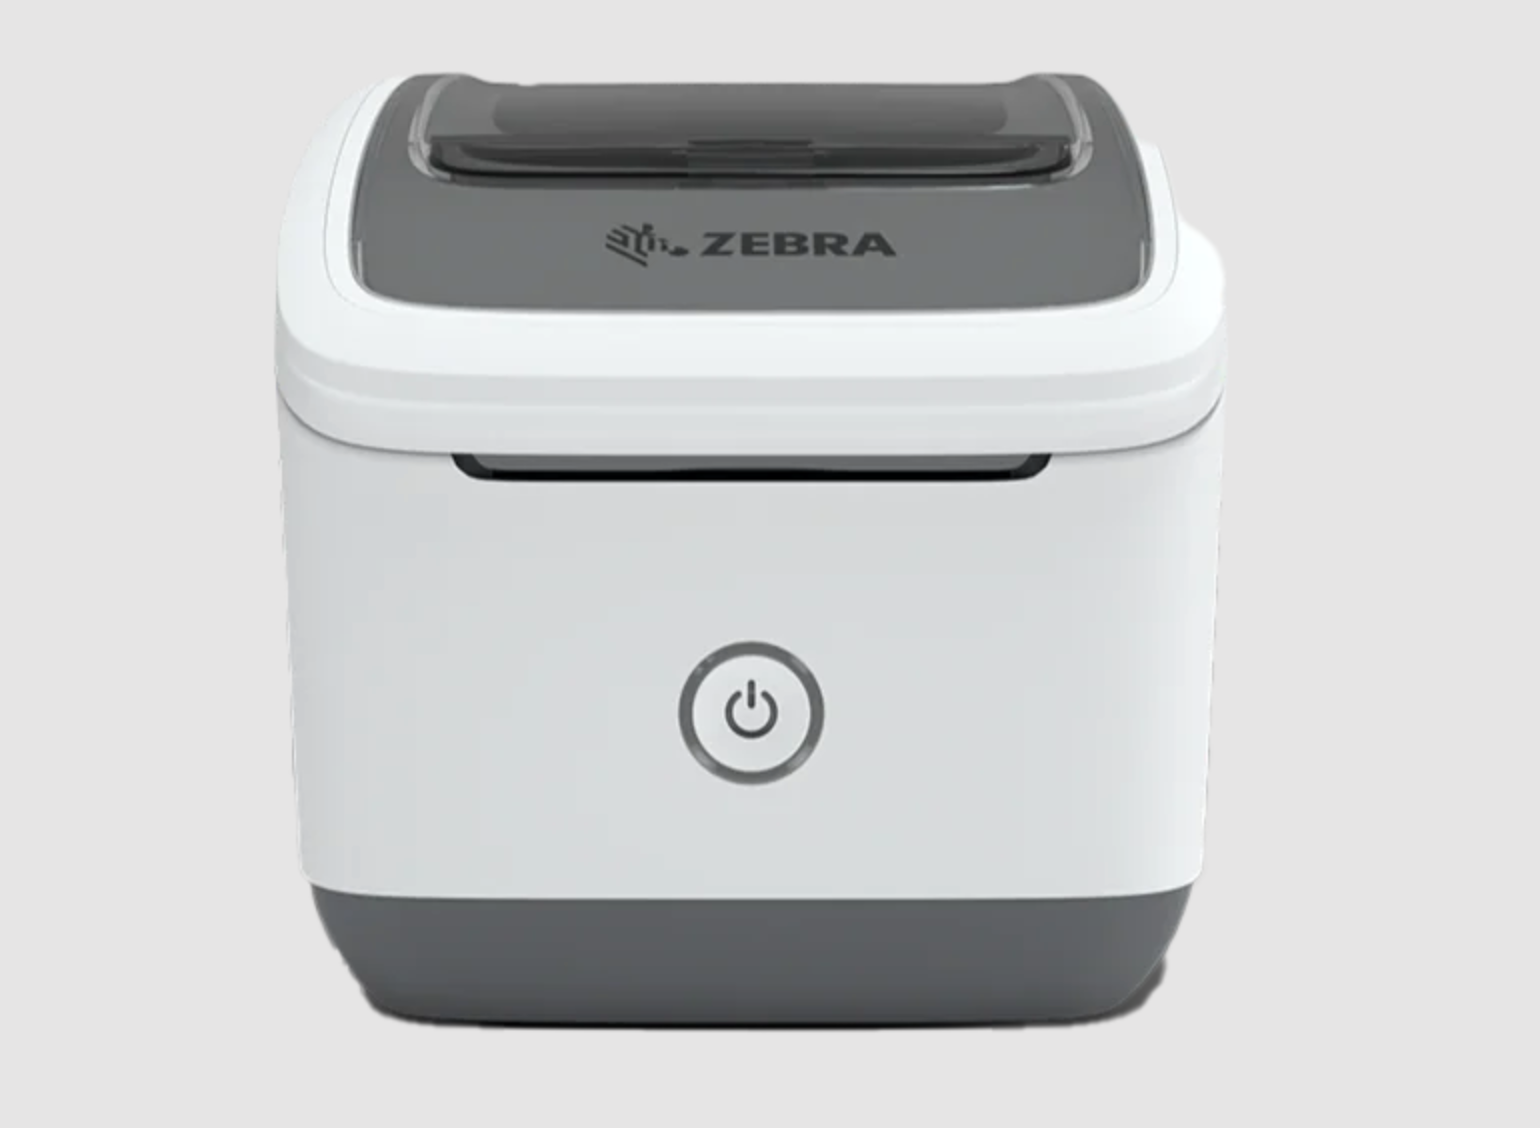 Image of Zebra ZSB 2” label printer